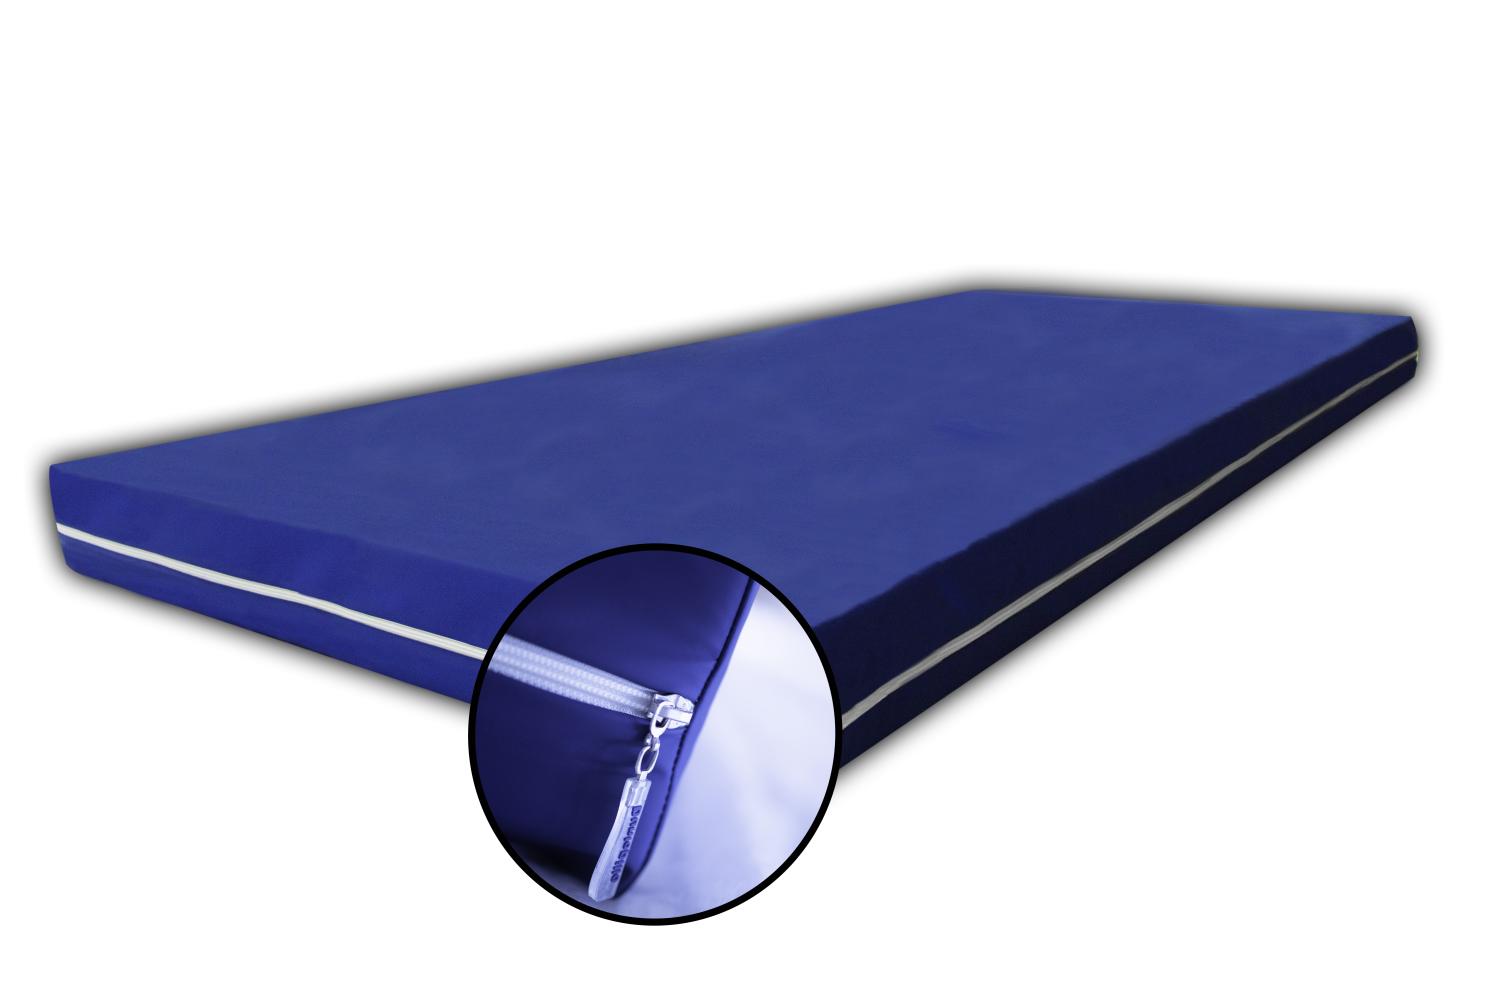 Rollmatratze, blau, RG30, 7 ZONEN mit Bezug: WASSERDICHT, 180 x 200 cm Bild 1